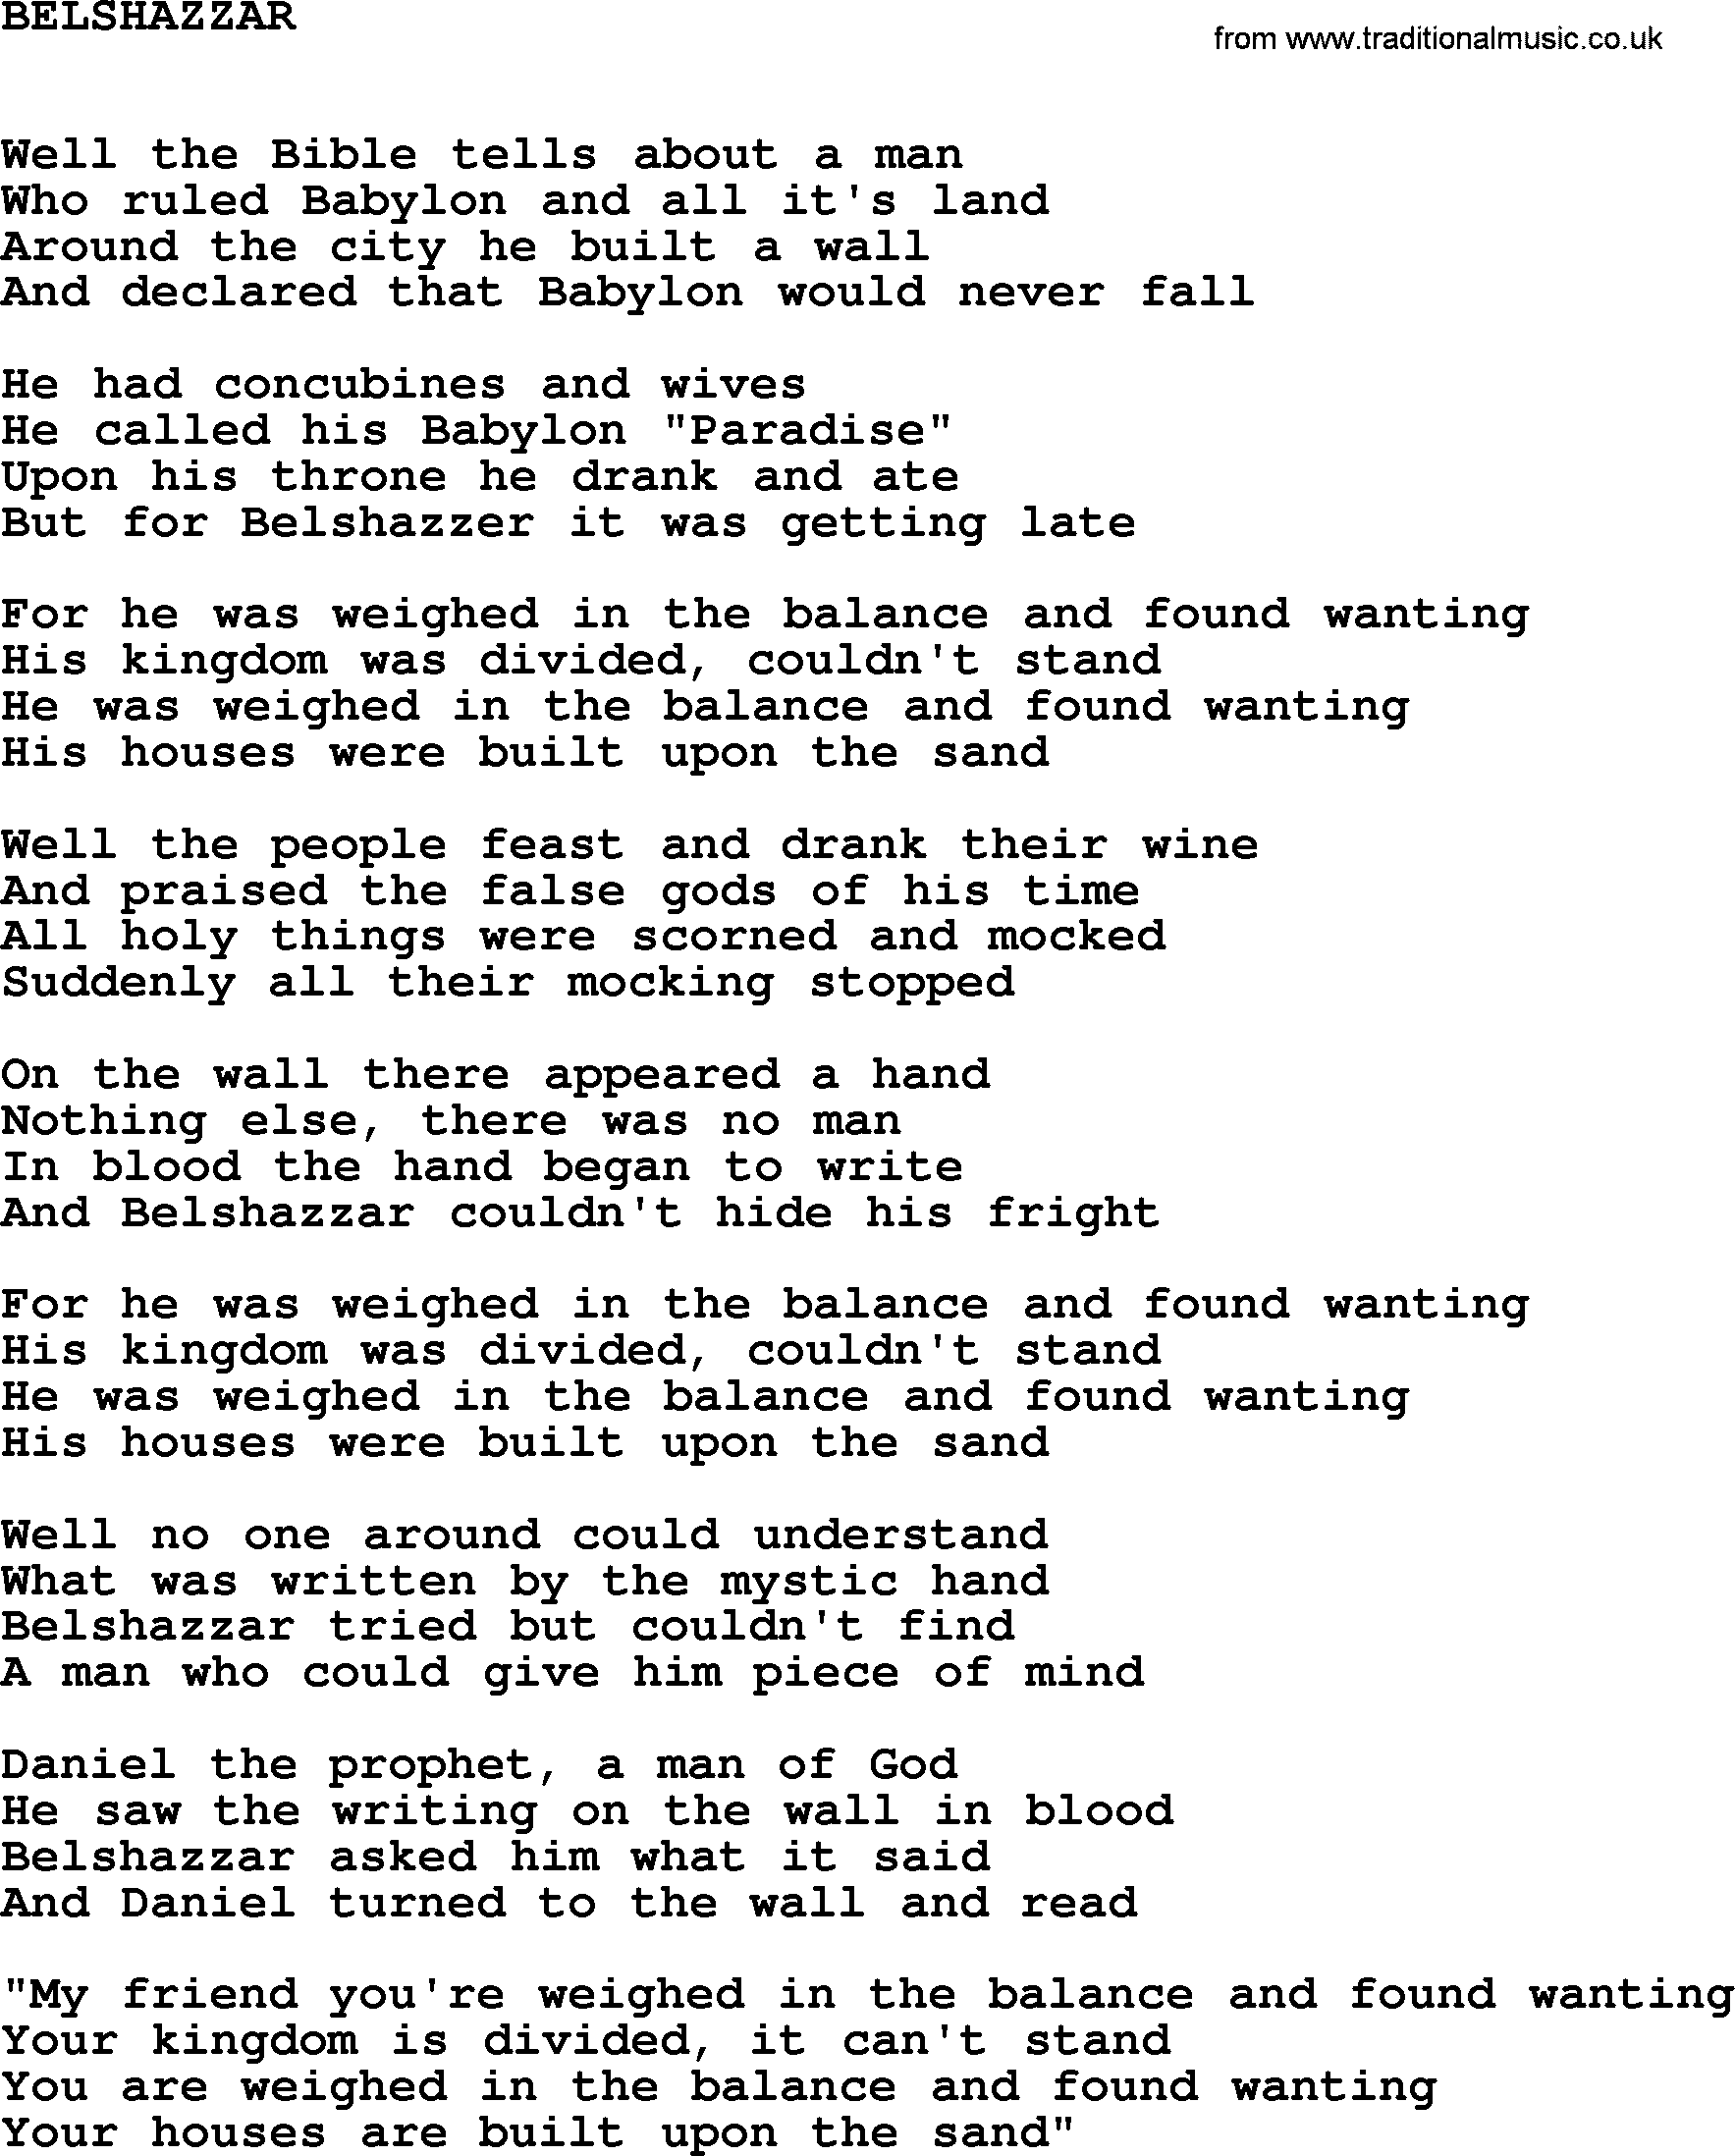 Johnny Cash song Belshazzar.txt lyrics